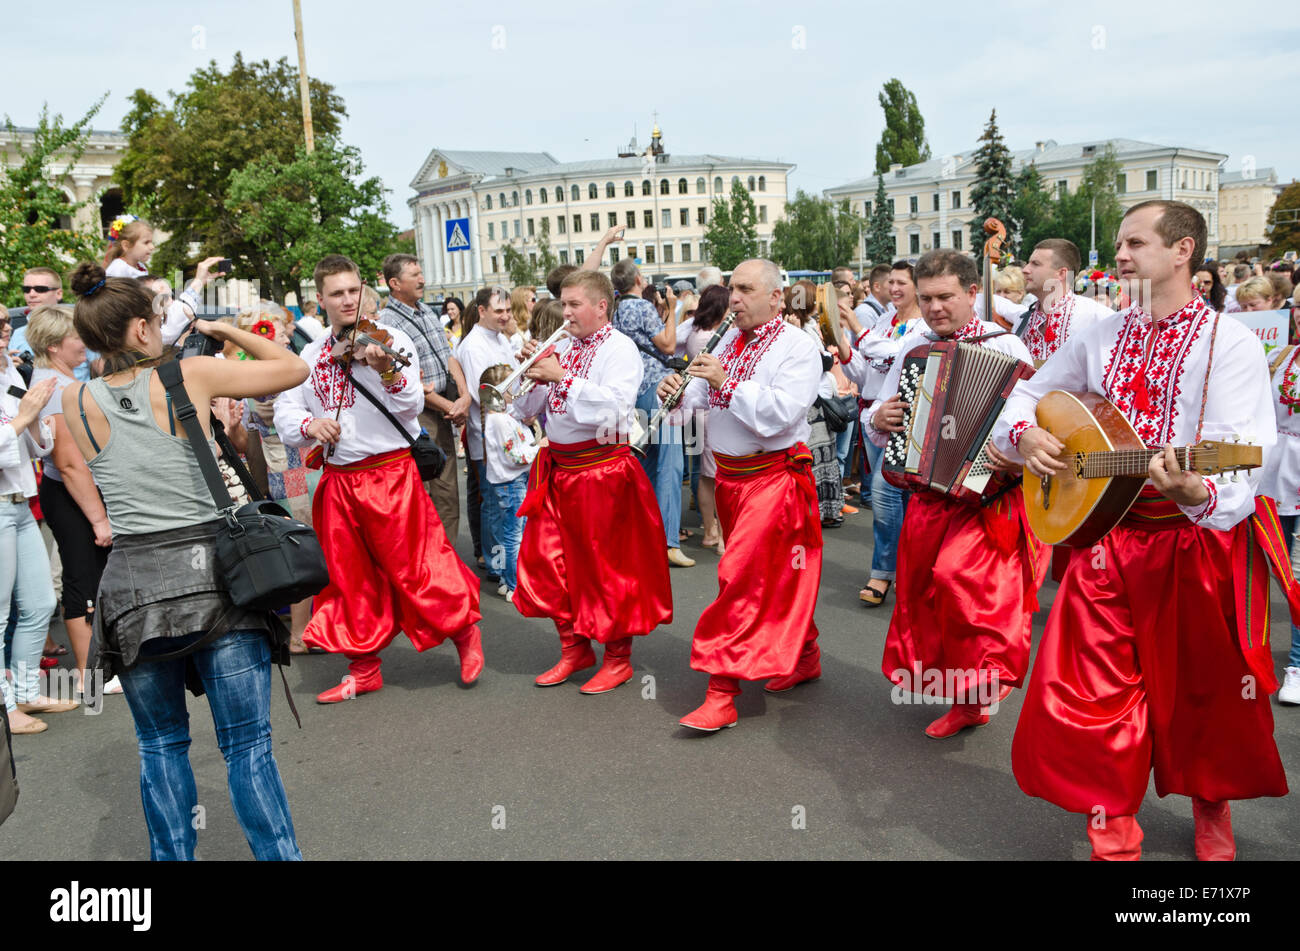 Ukrainian celebration of the Independence Day Stock Photo